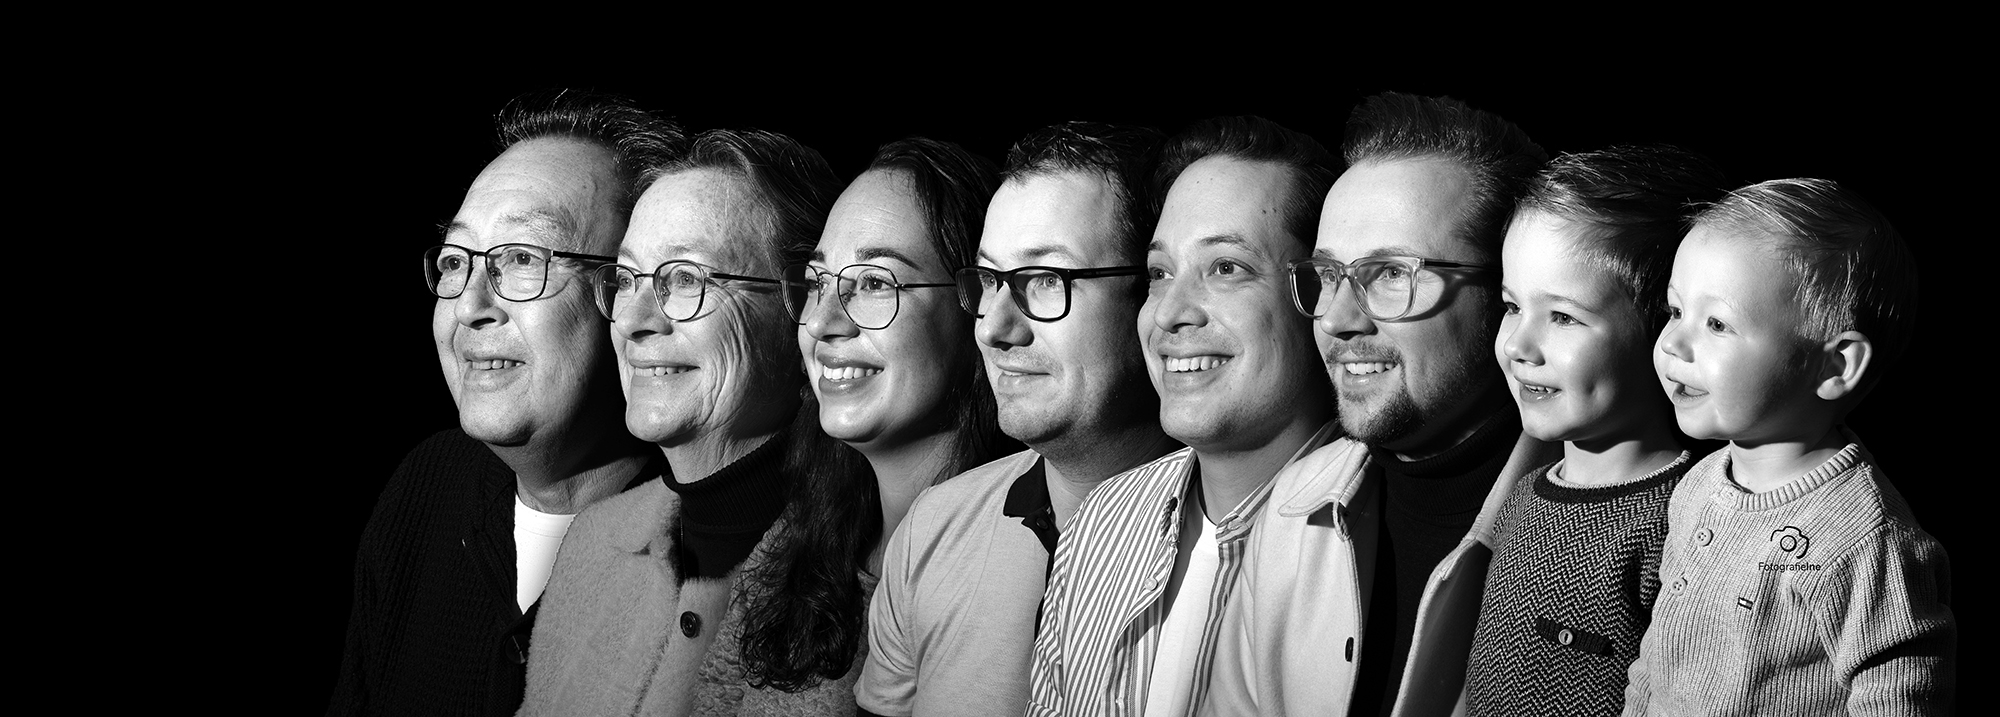 Fotografie Ine collage family zij foto familie fotograaf Boekel